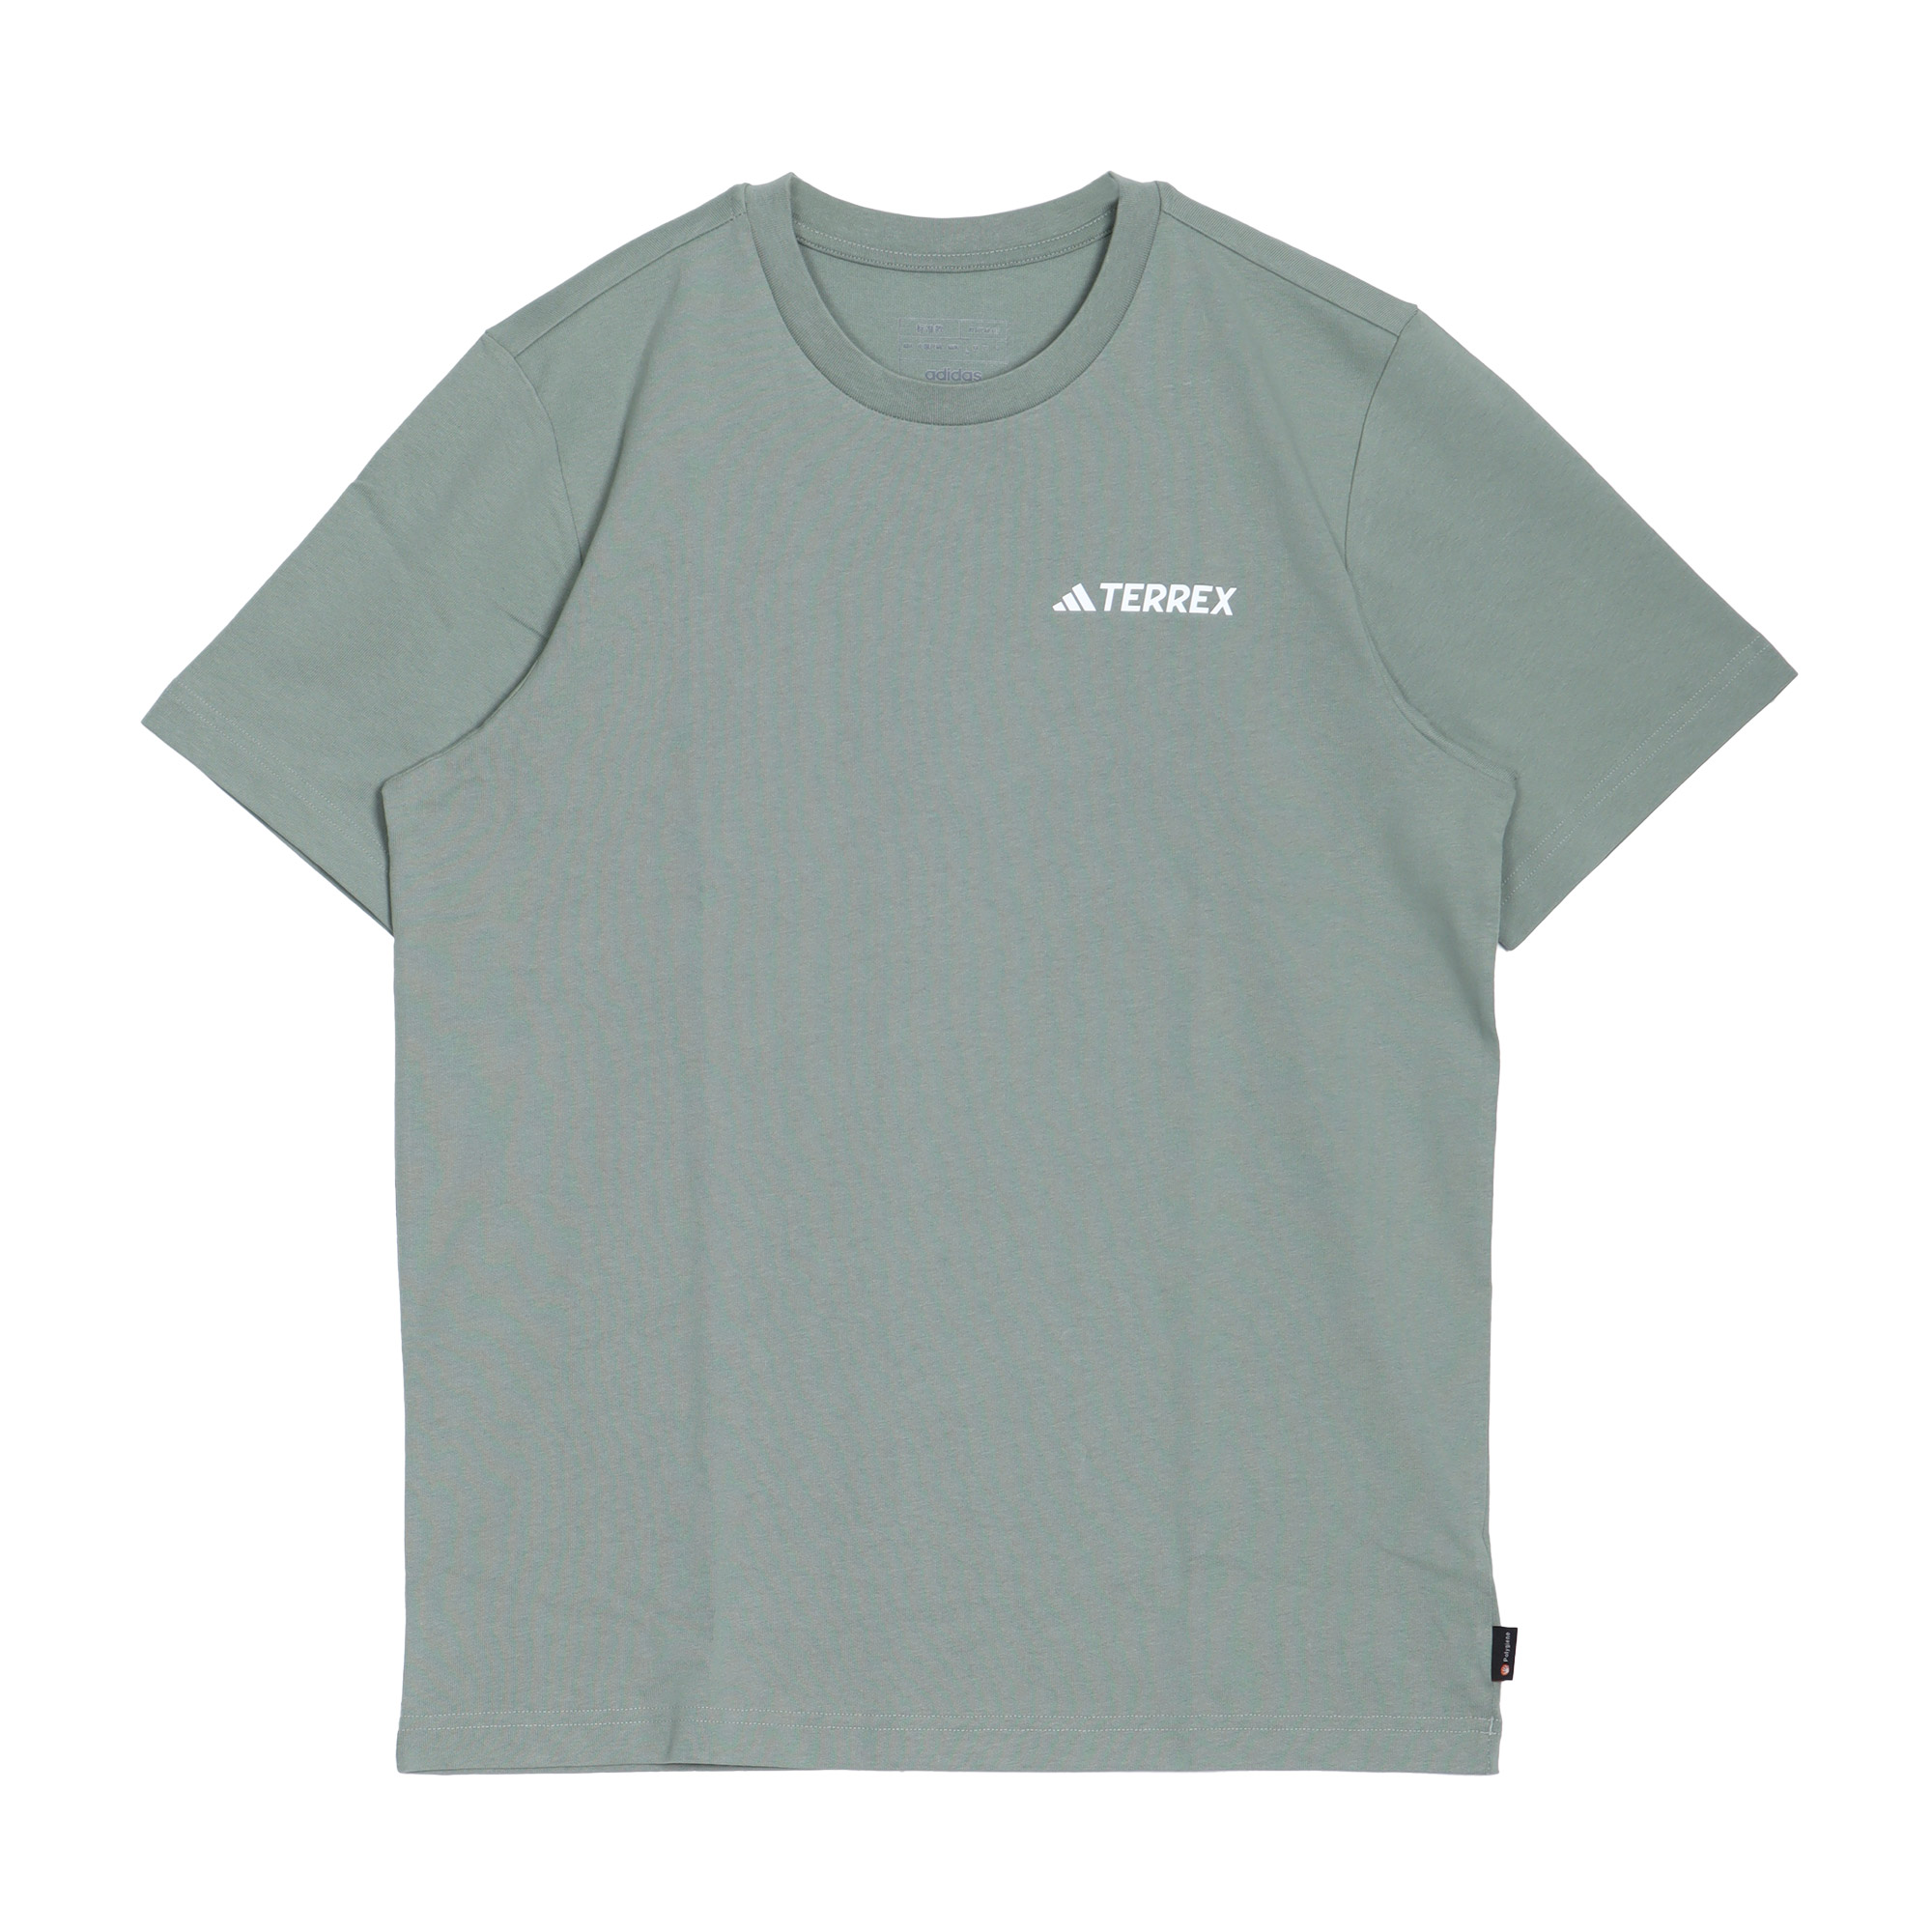 アディダス 半袖Tシャツ メンズ ADIDAS KOC80 グリーン 緑 ホワイト 白 トップス t...